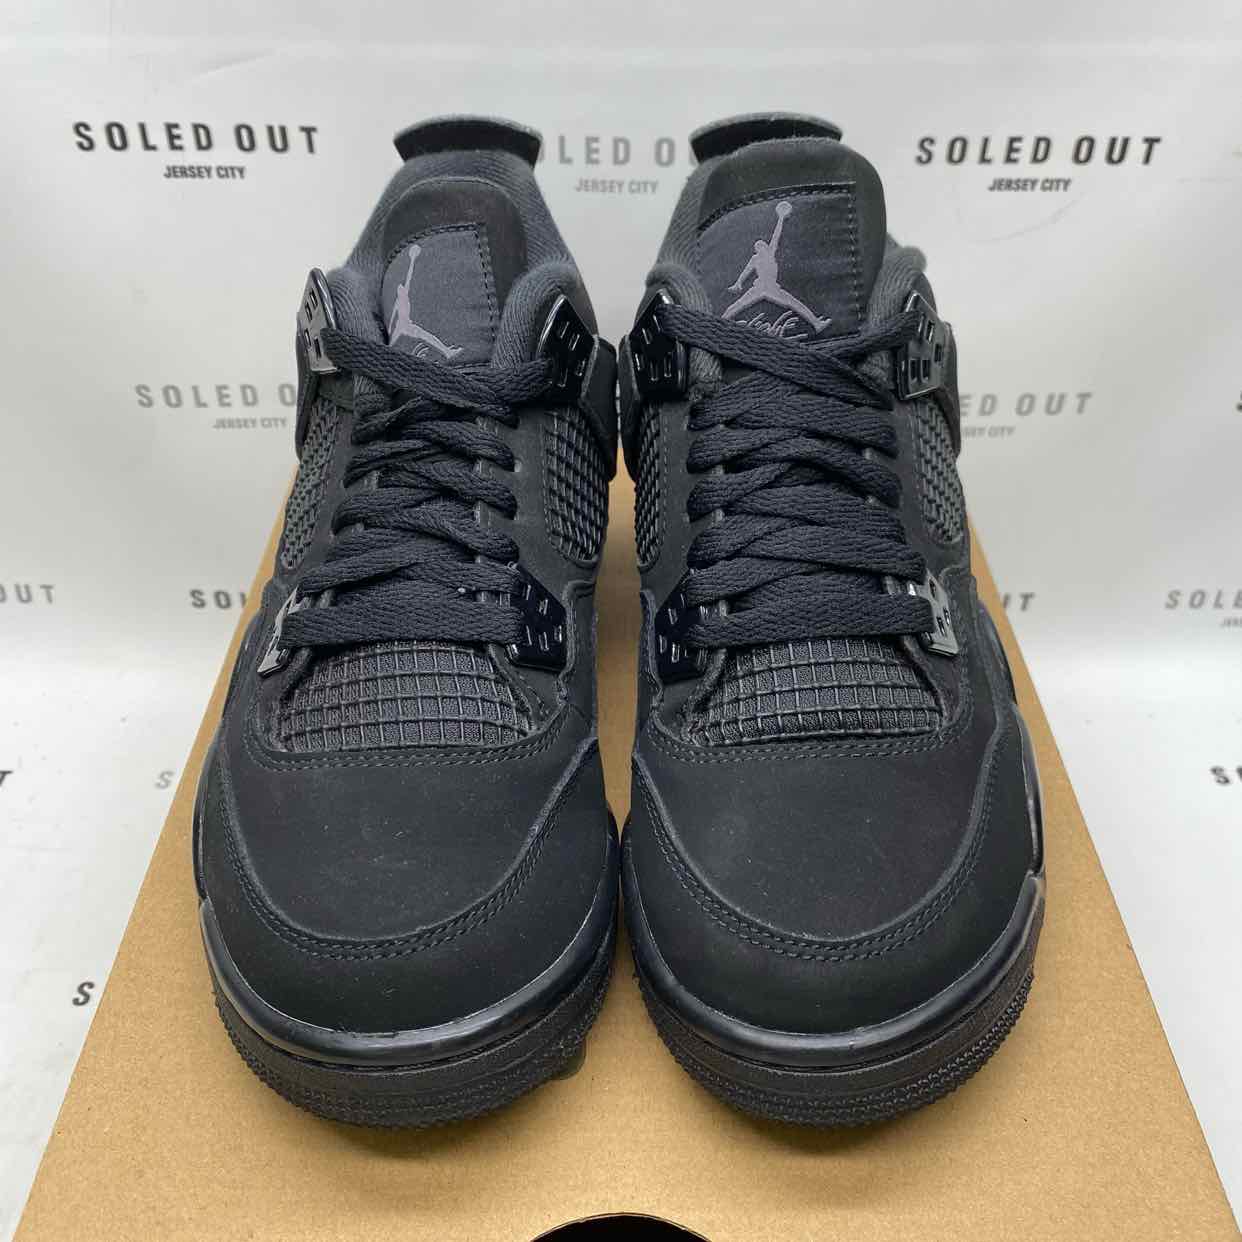 Air Jordan (GS) 4 Retro "Black Cat" 2019 Used Size 5.5Y